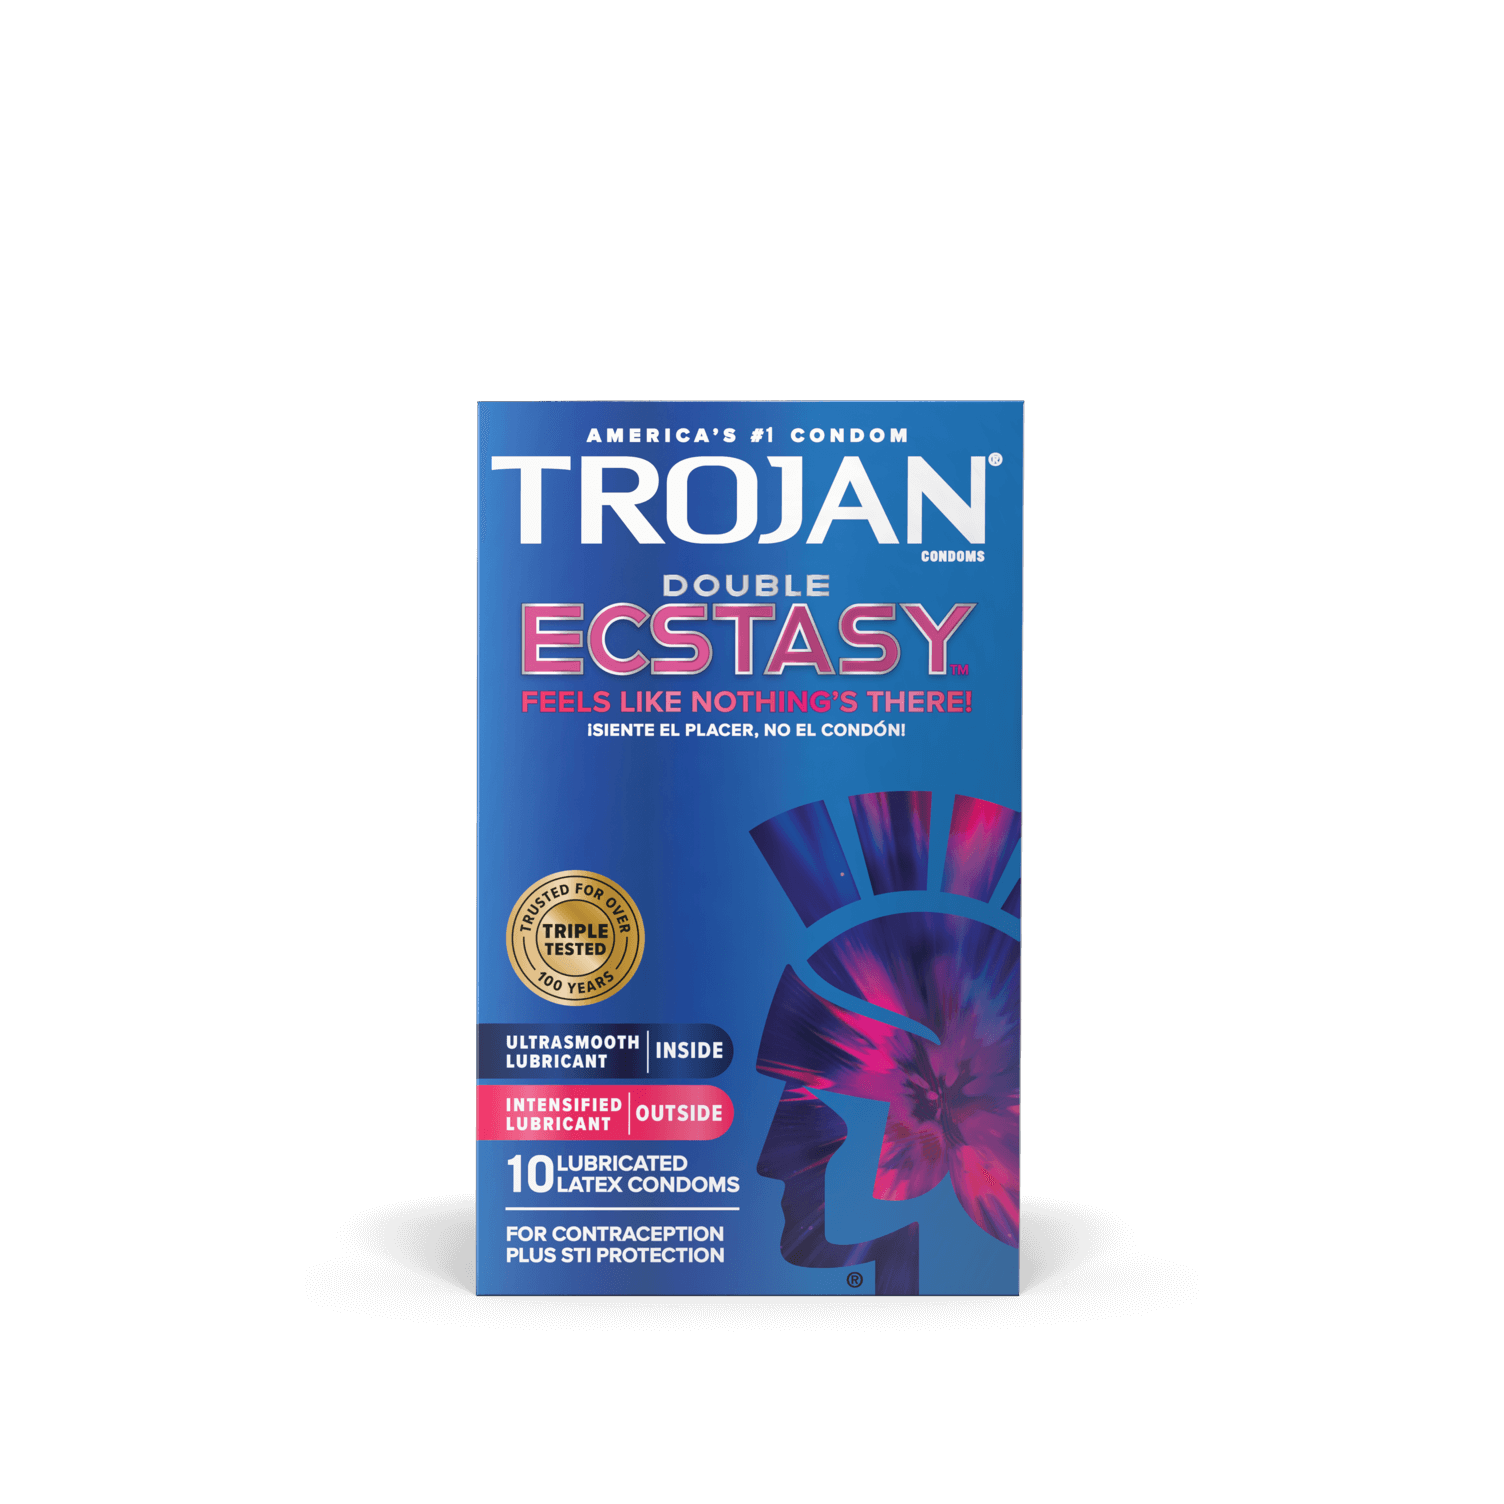 Trojan Double Ecstasy double-lubricated condoms.